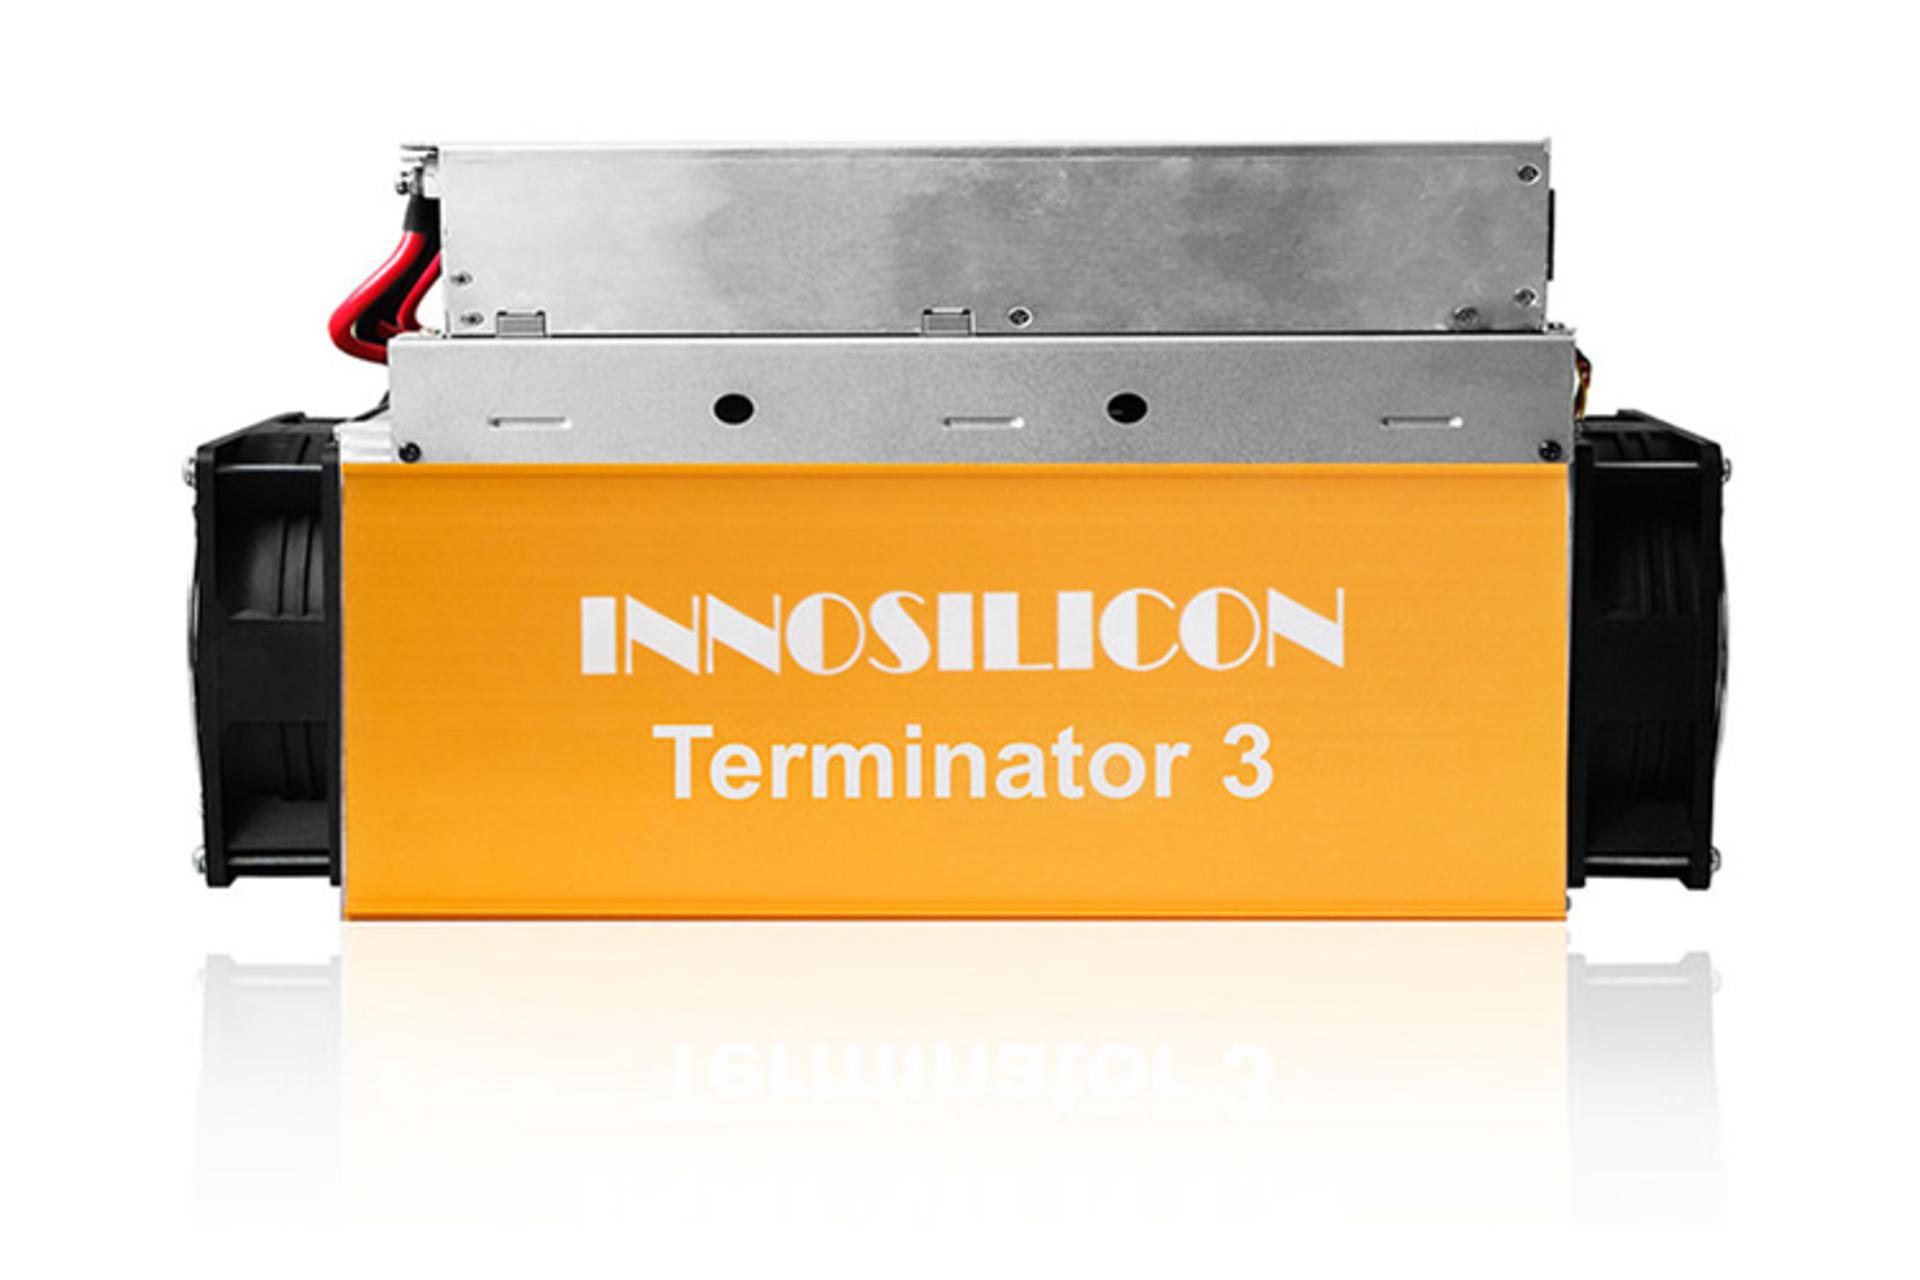 Innosilicon T3 PLUS (52T) / ماینر Innosilicon T3 PLUS (52T)